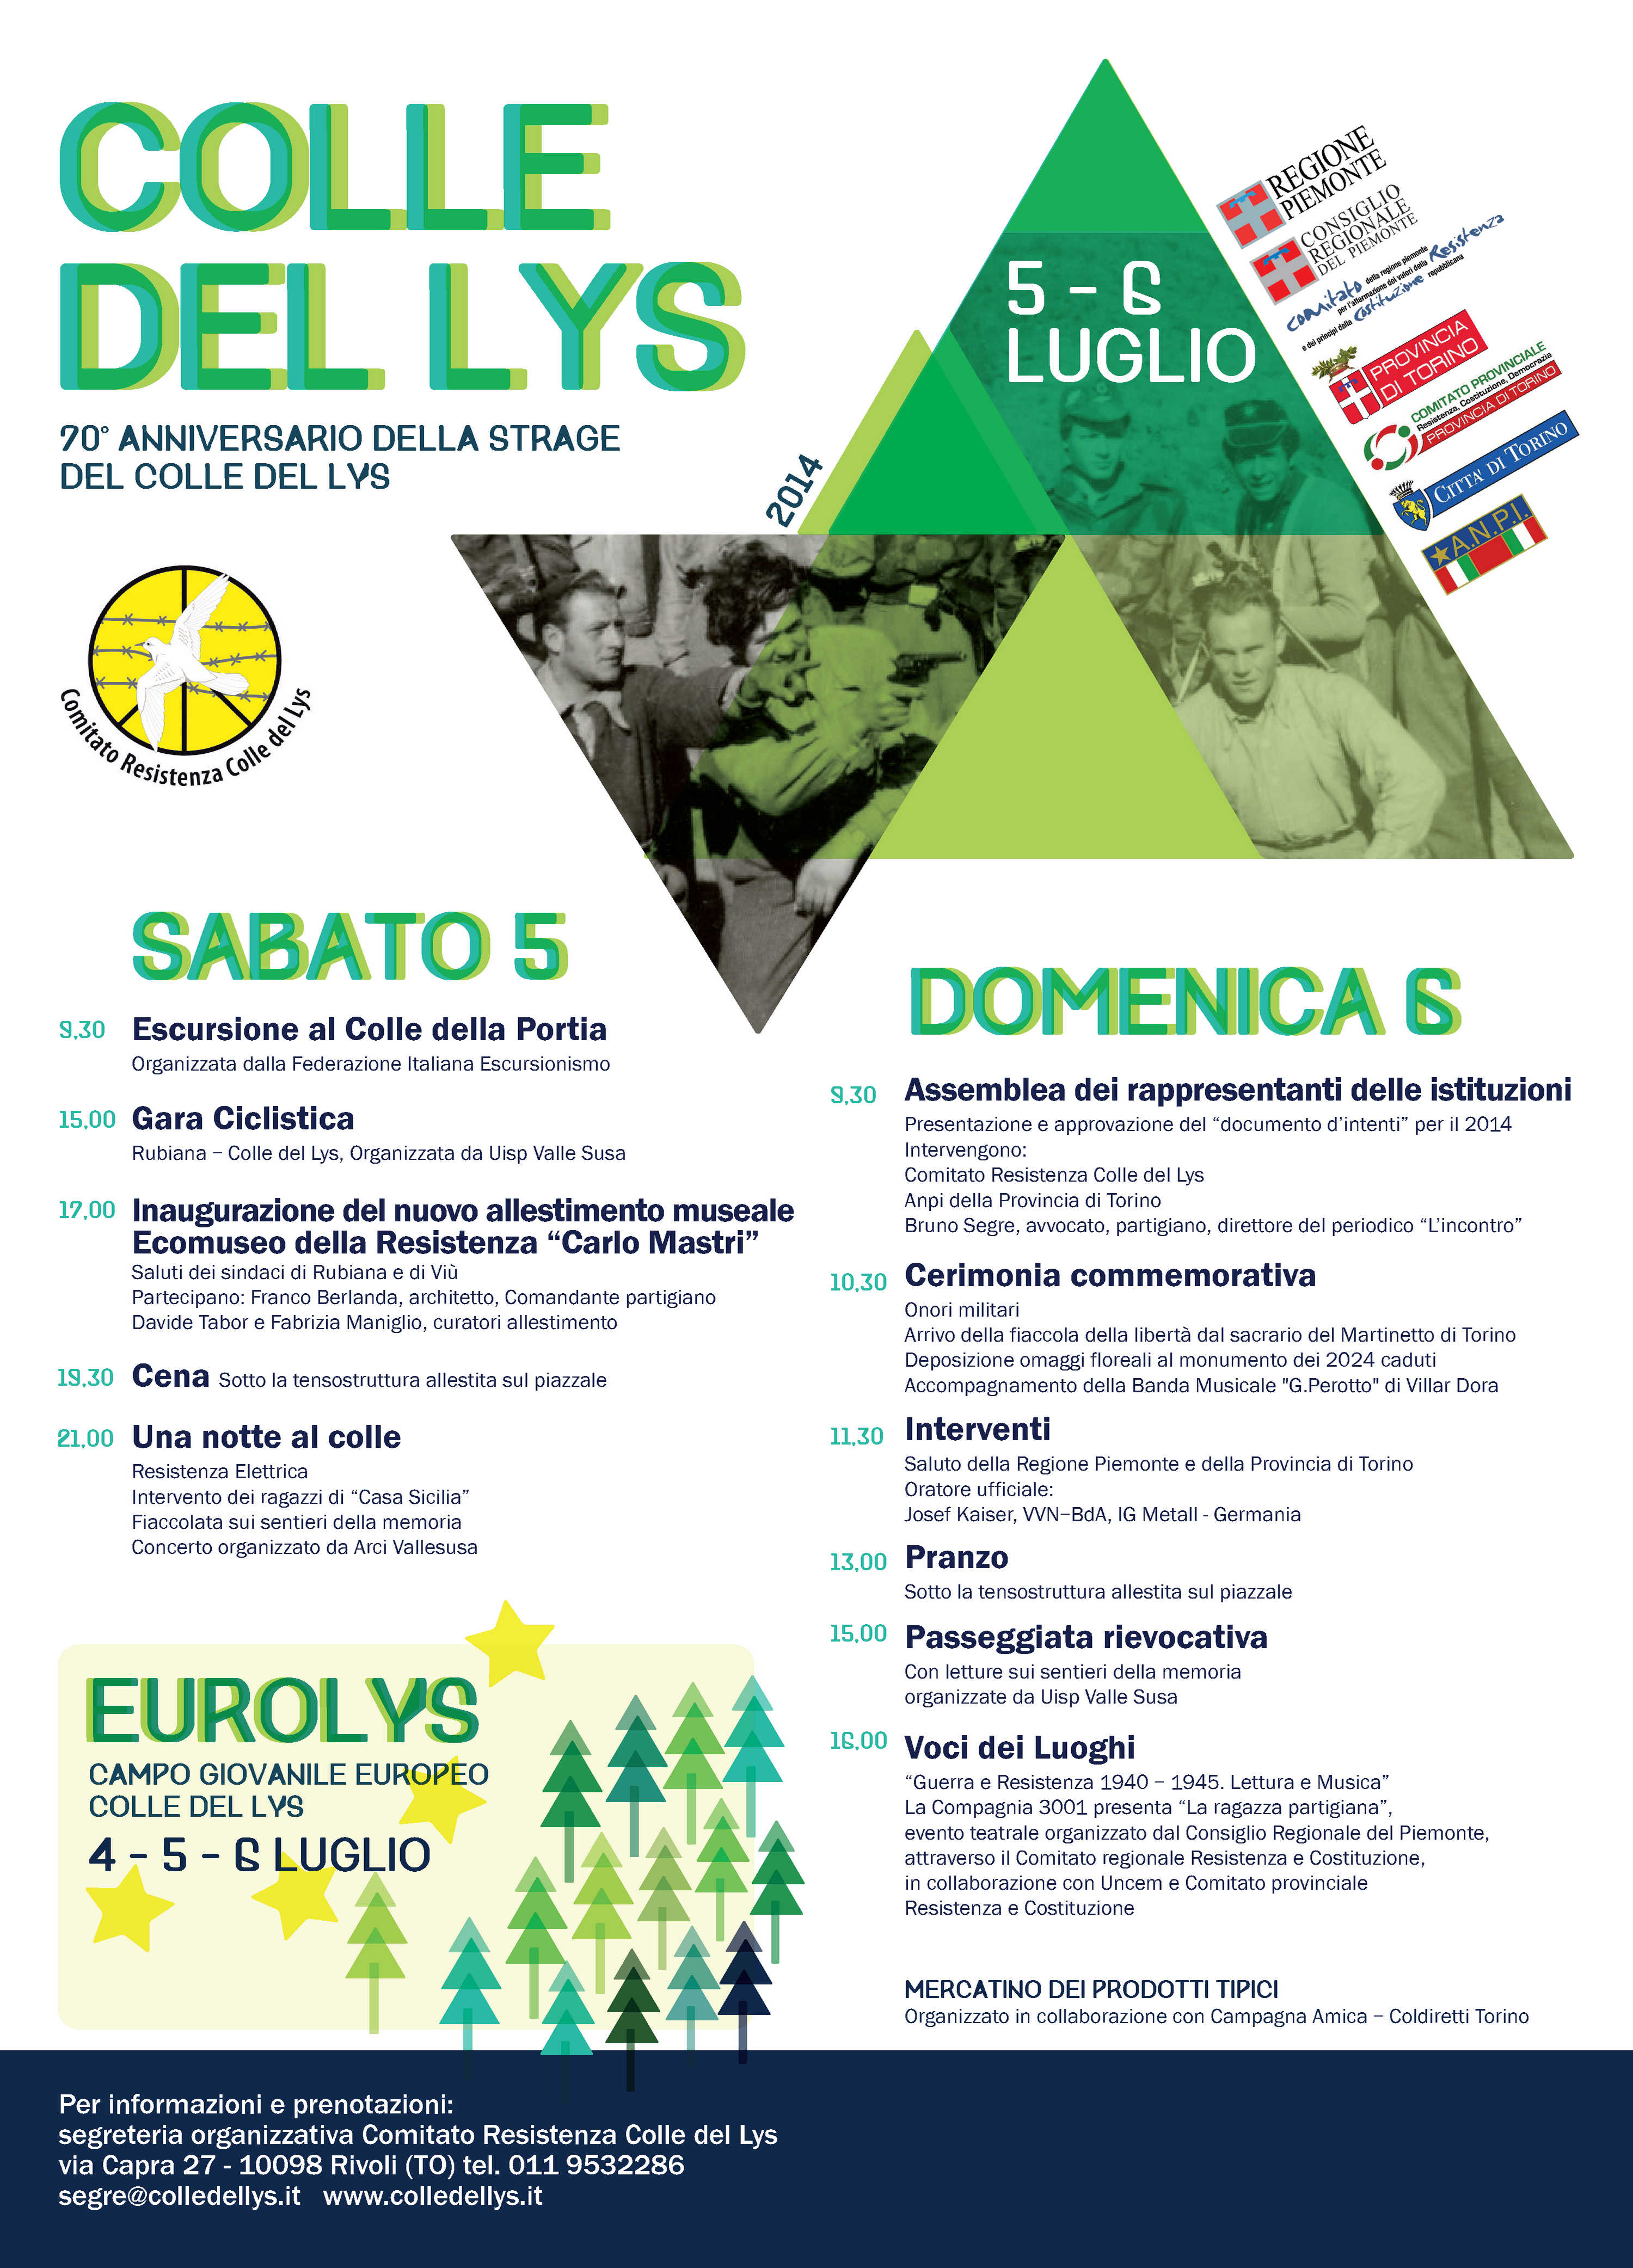 Colle del Lys 2014 - Veranstaltungsprogramm